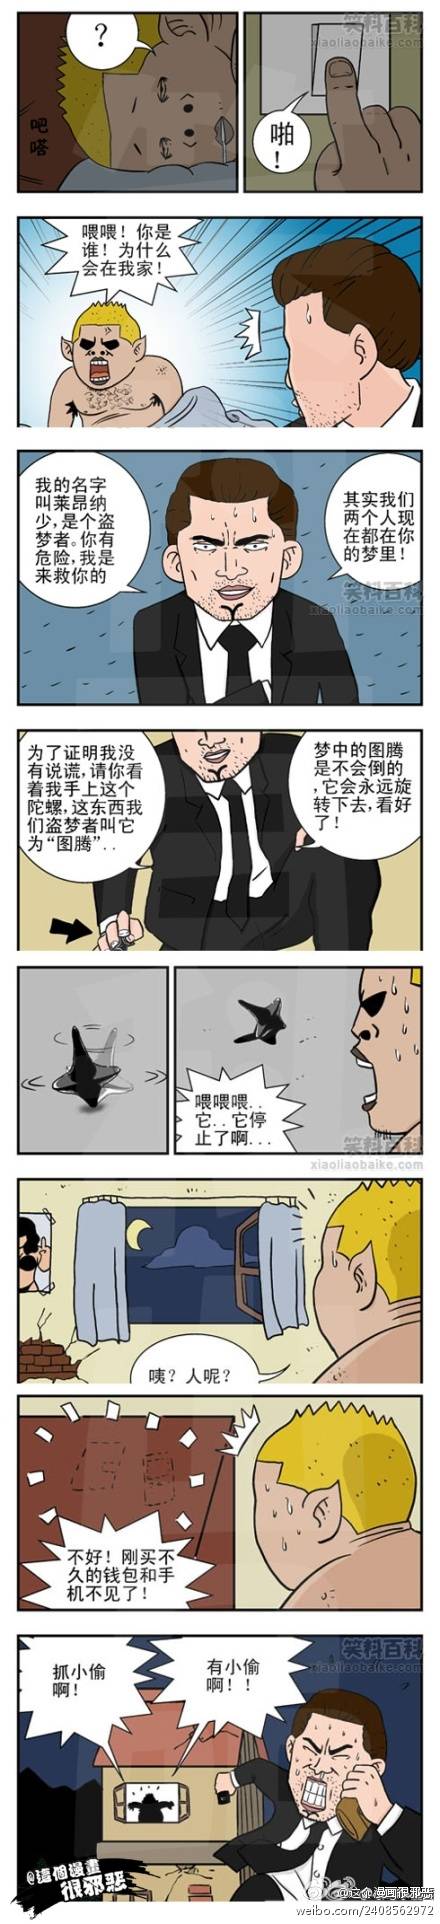 邪恶漫画爆笑囧图第21刊：争斗的小孩